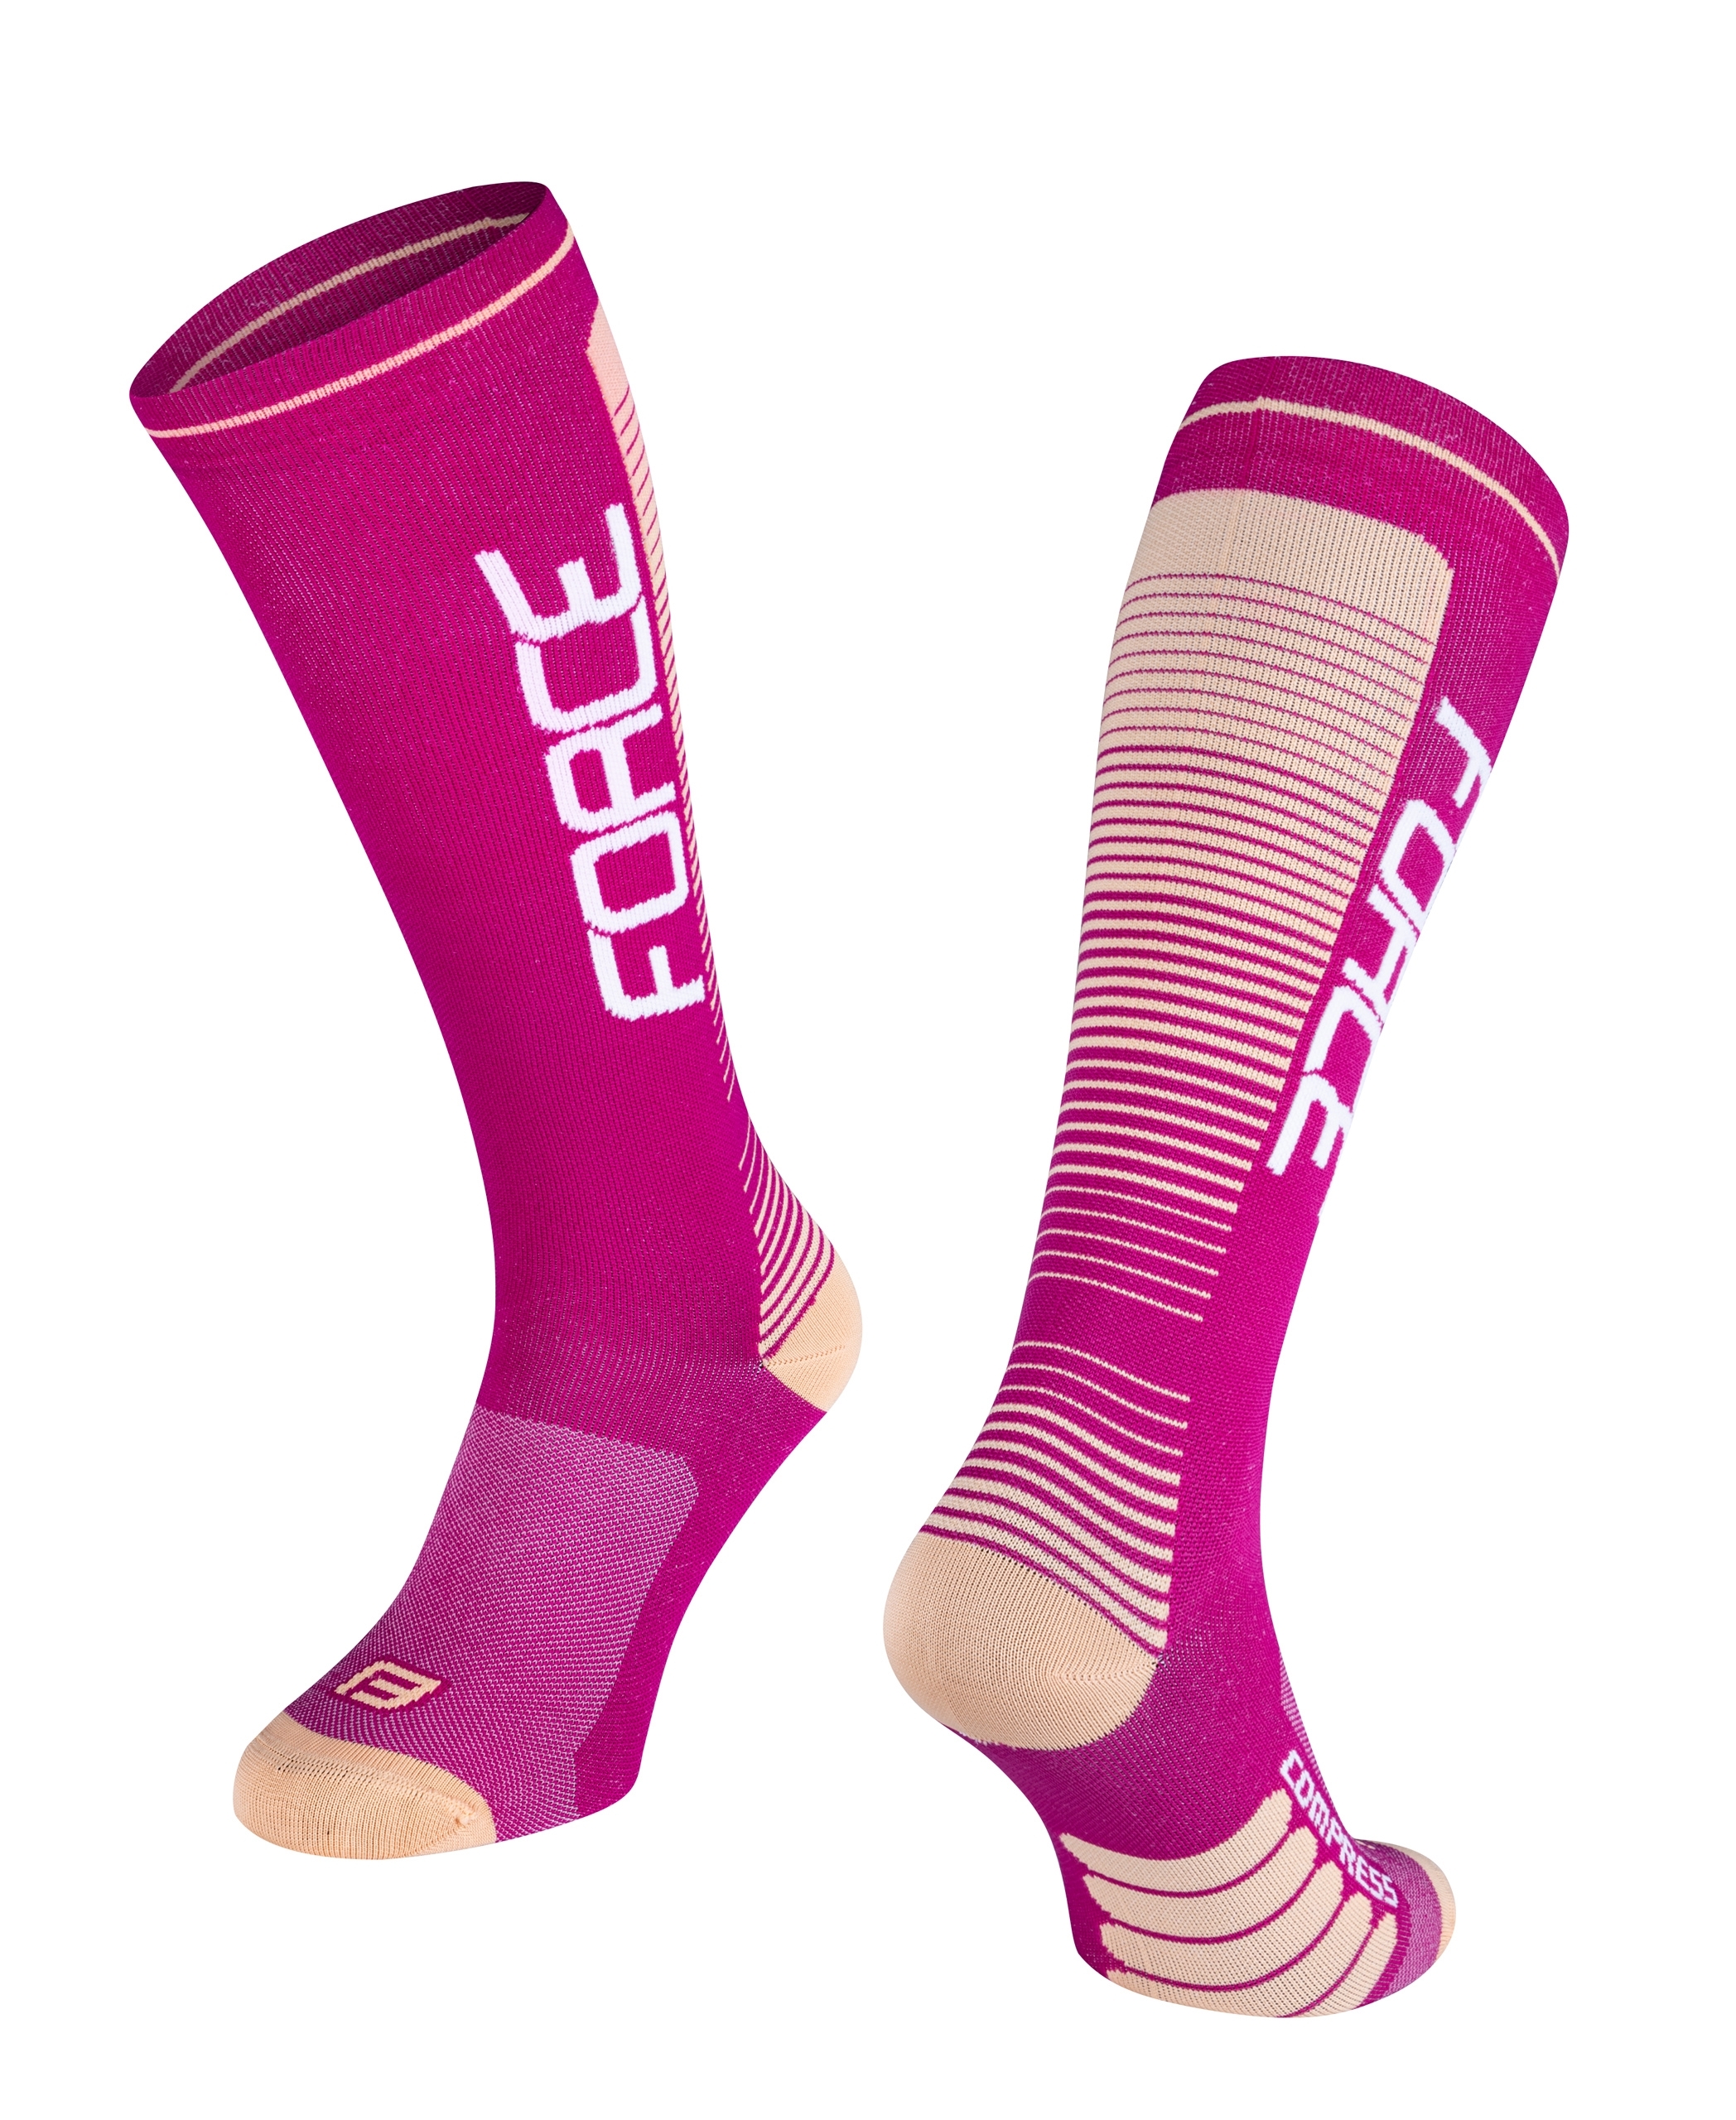 Kompresní ponožky FORCE Compress fialovo-meruňkové L-XL/42-47